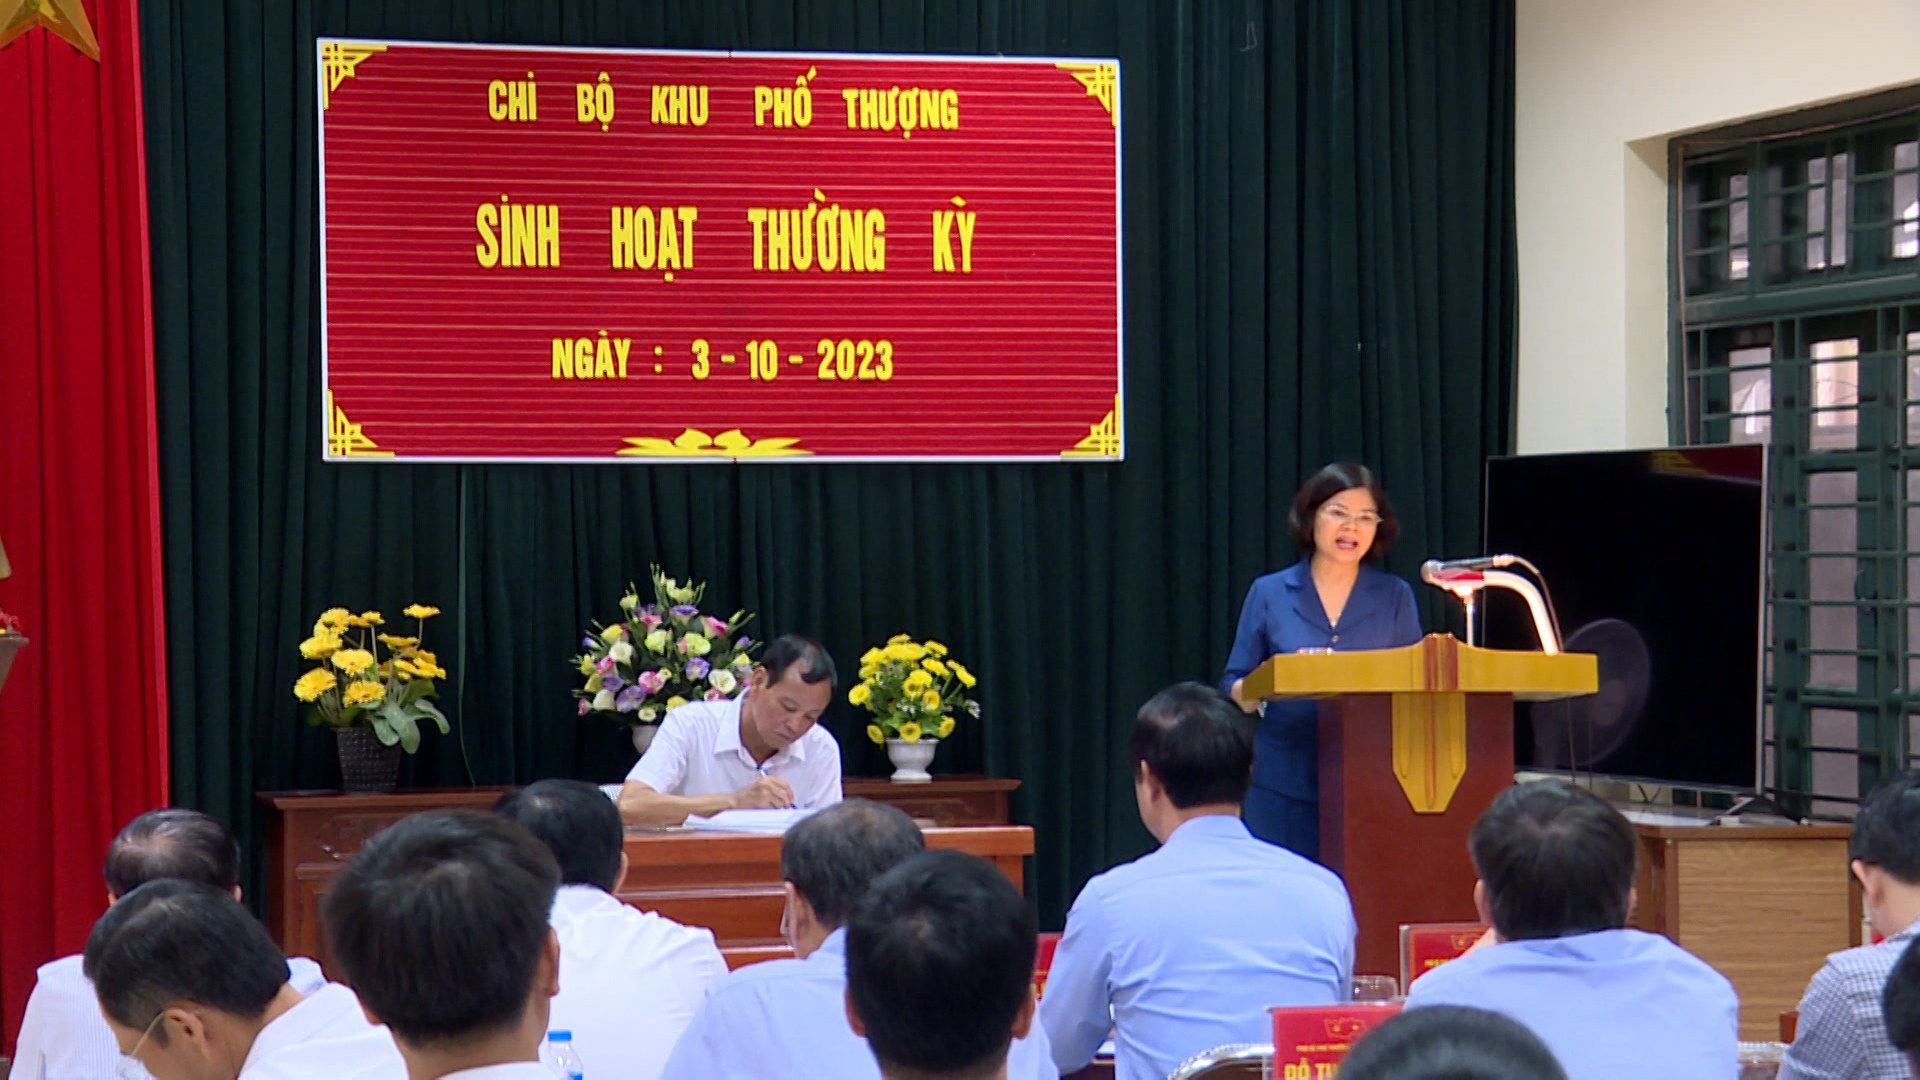 Chủ tịch UBND tỉnh Nguyễn Hương Giang dự sinh hoạt Chi bộ khu phố Thượng phường Đình Bảng